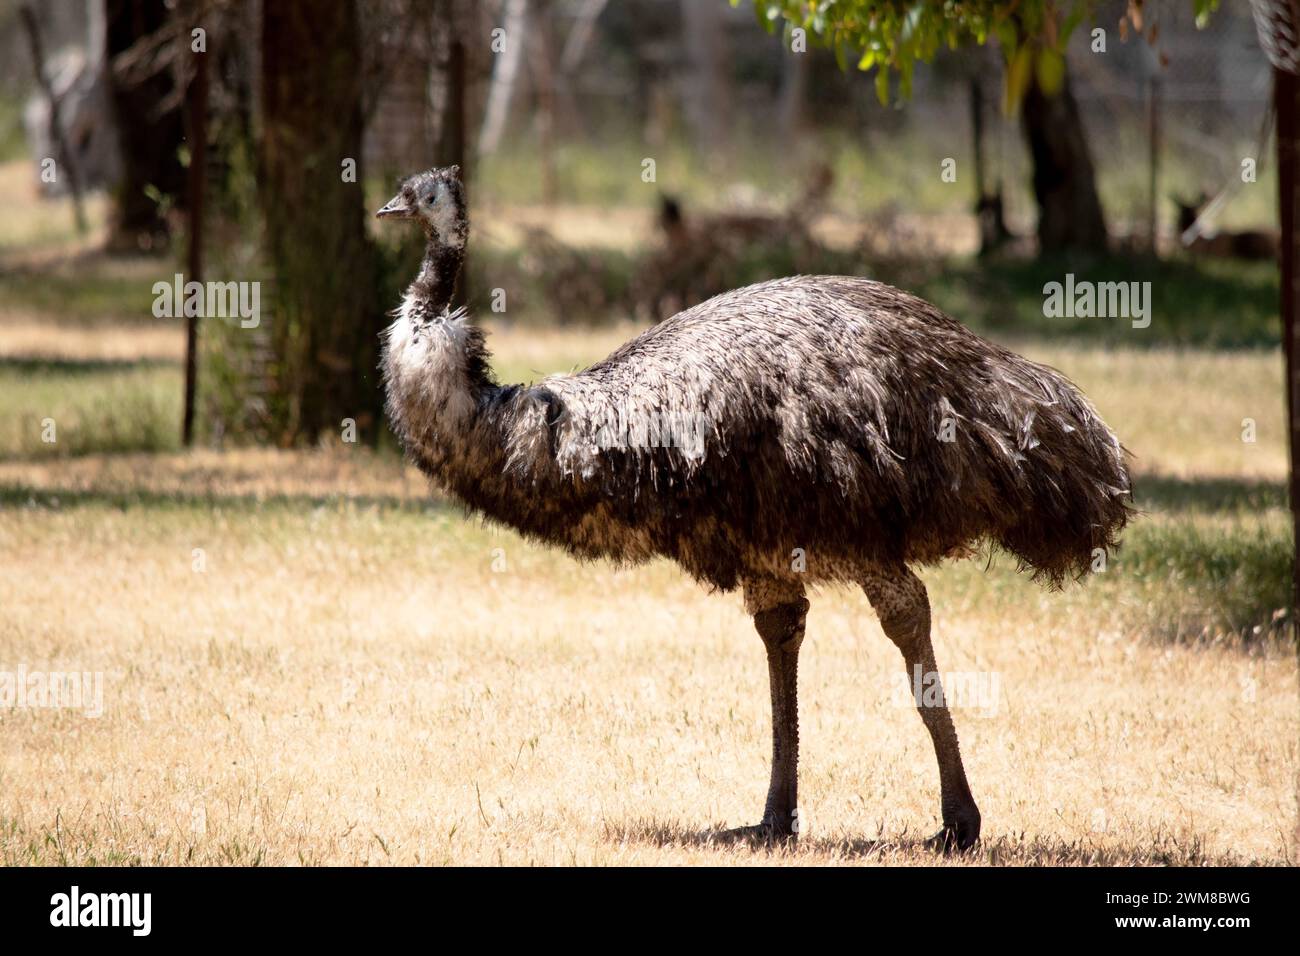 Emus sind mit primitiven Federn bedeckt, die dunkelbraun bis graubraun mit schwarzen Spitzen sind. Der Hals der EWU ist bläulich schwarz und meist federfrei Stockfoto